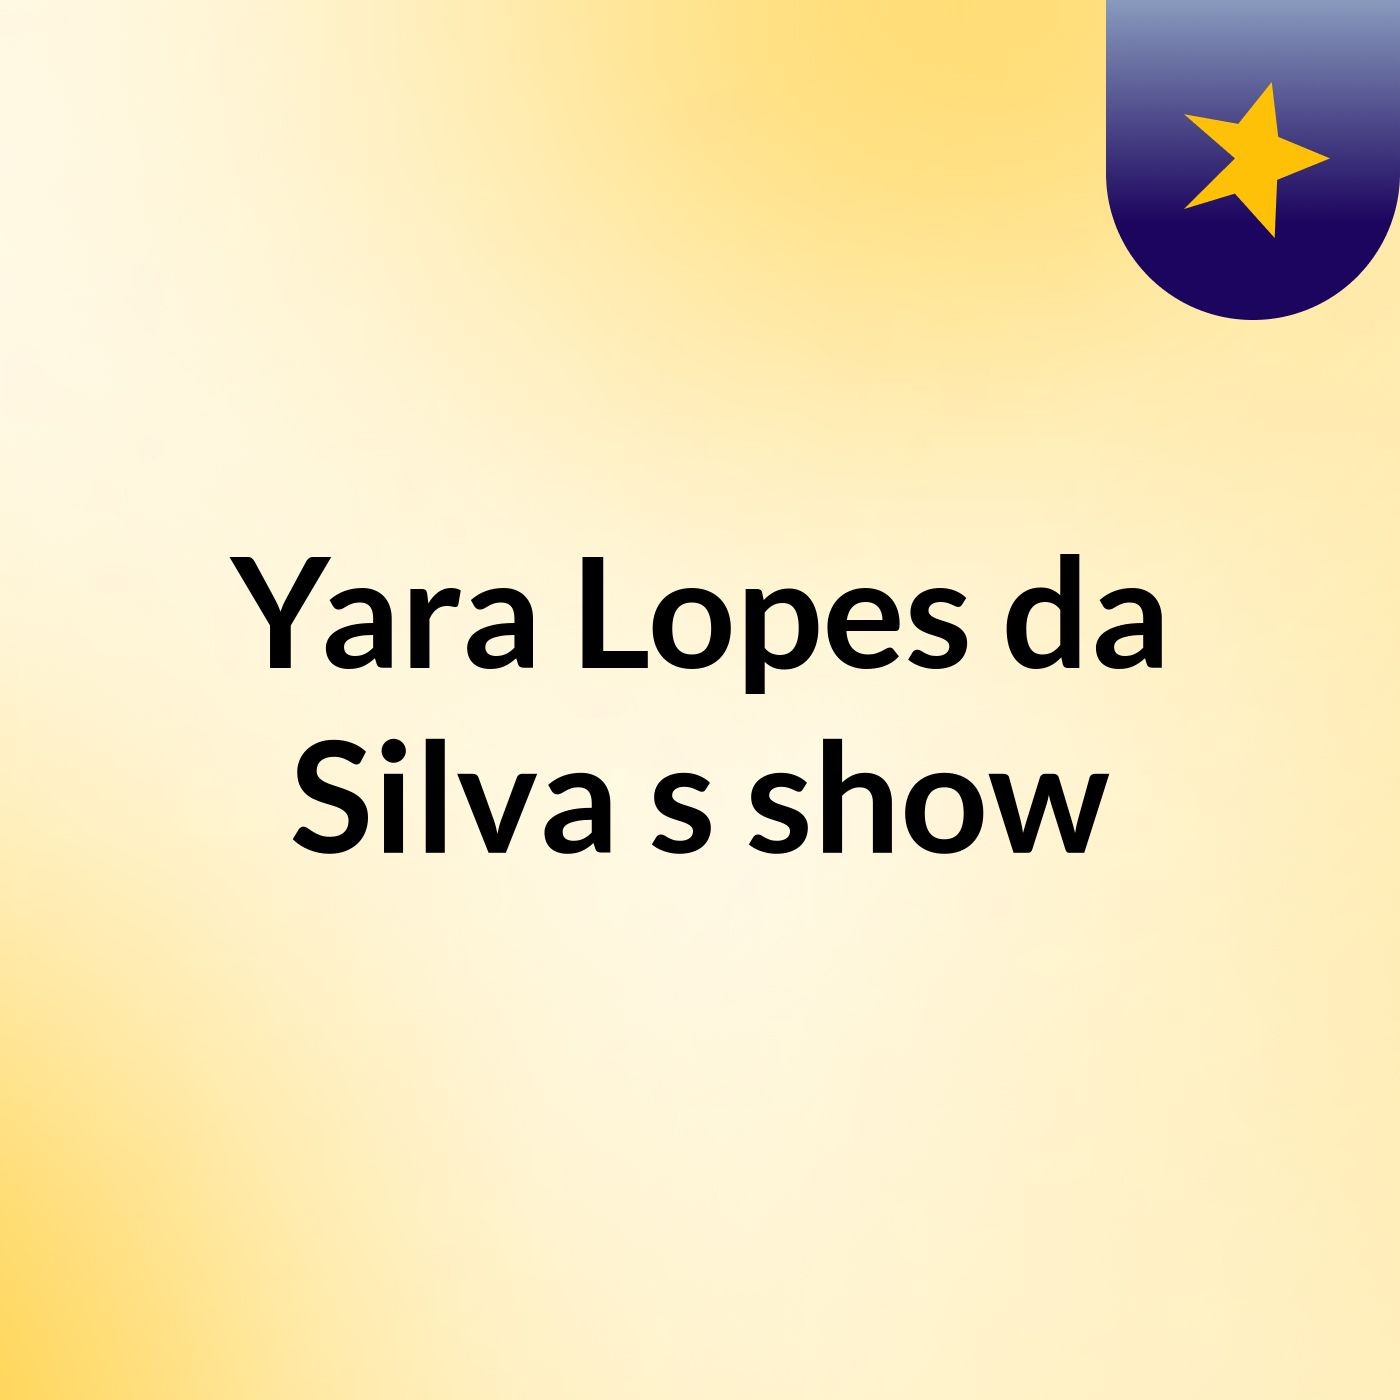 Yara Lopes da Silva's show